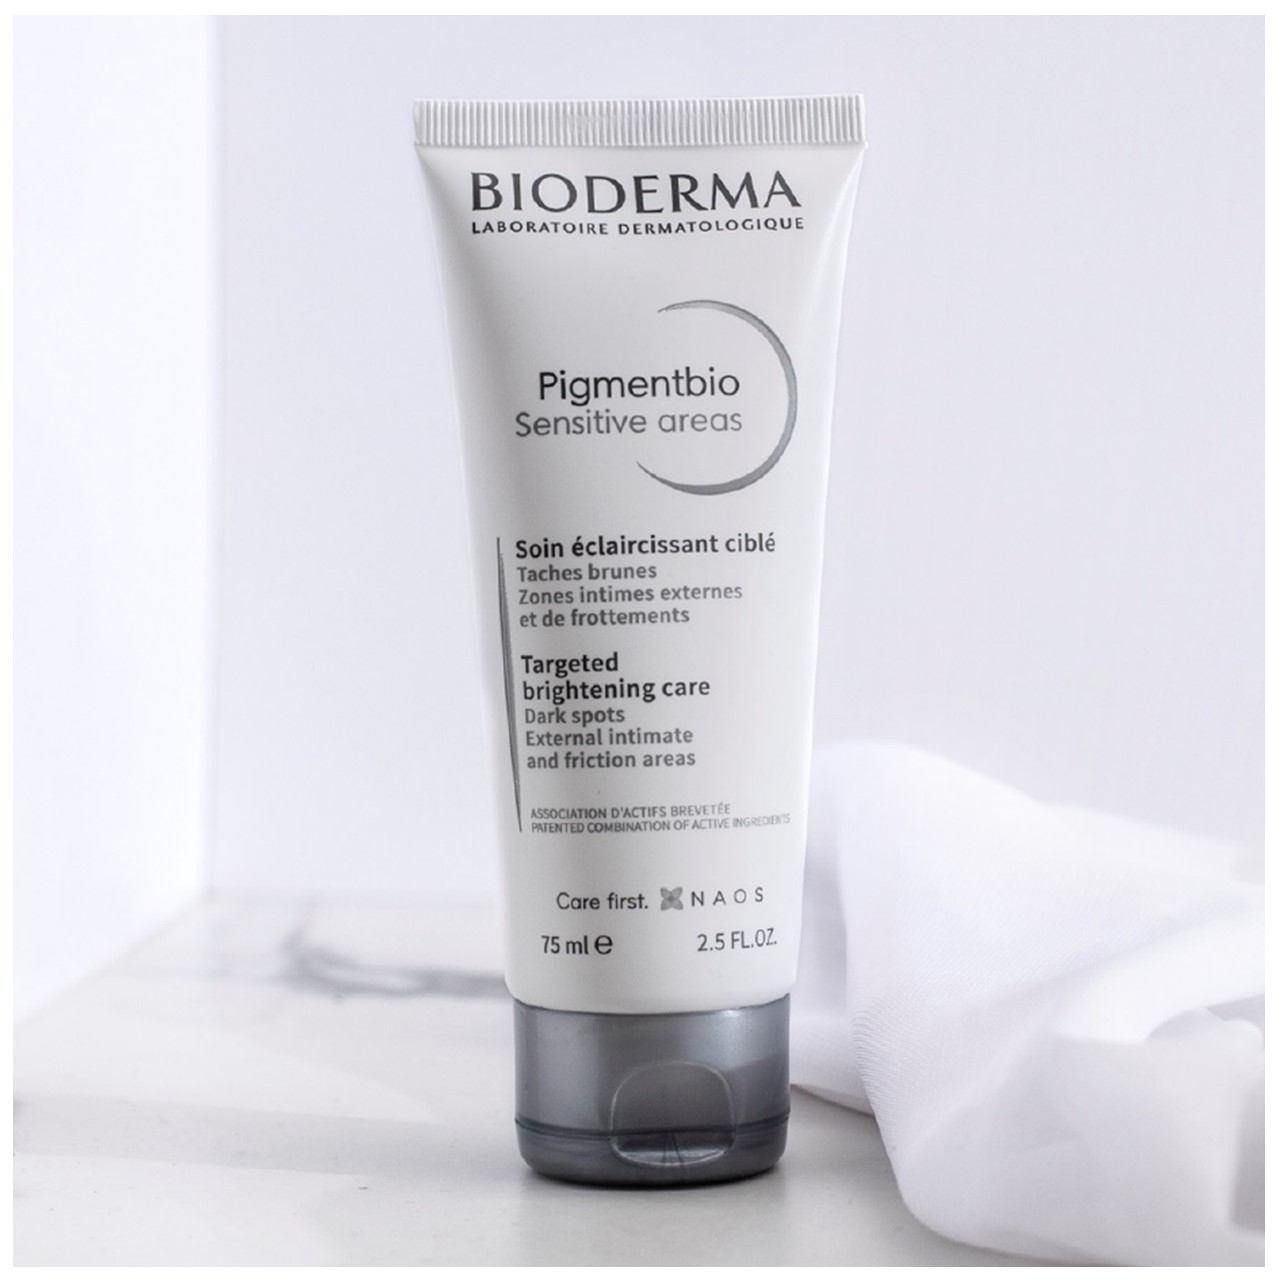 Buy Bioderma Pigmentbio online